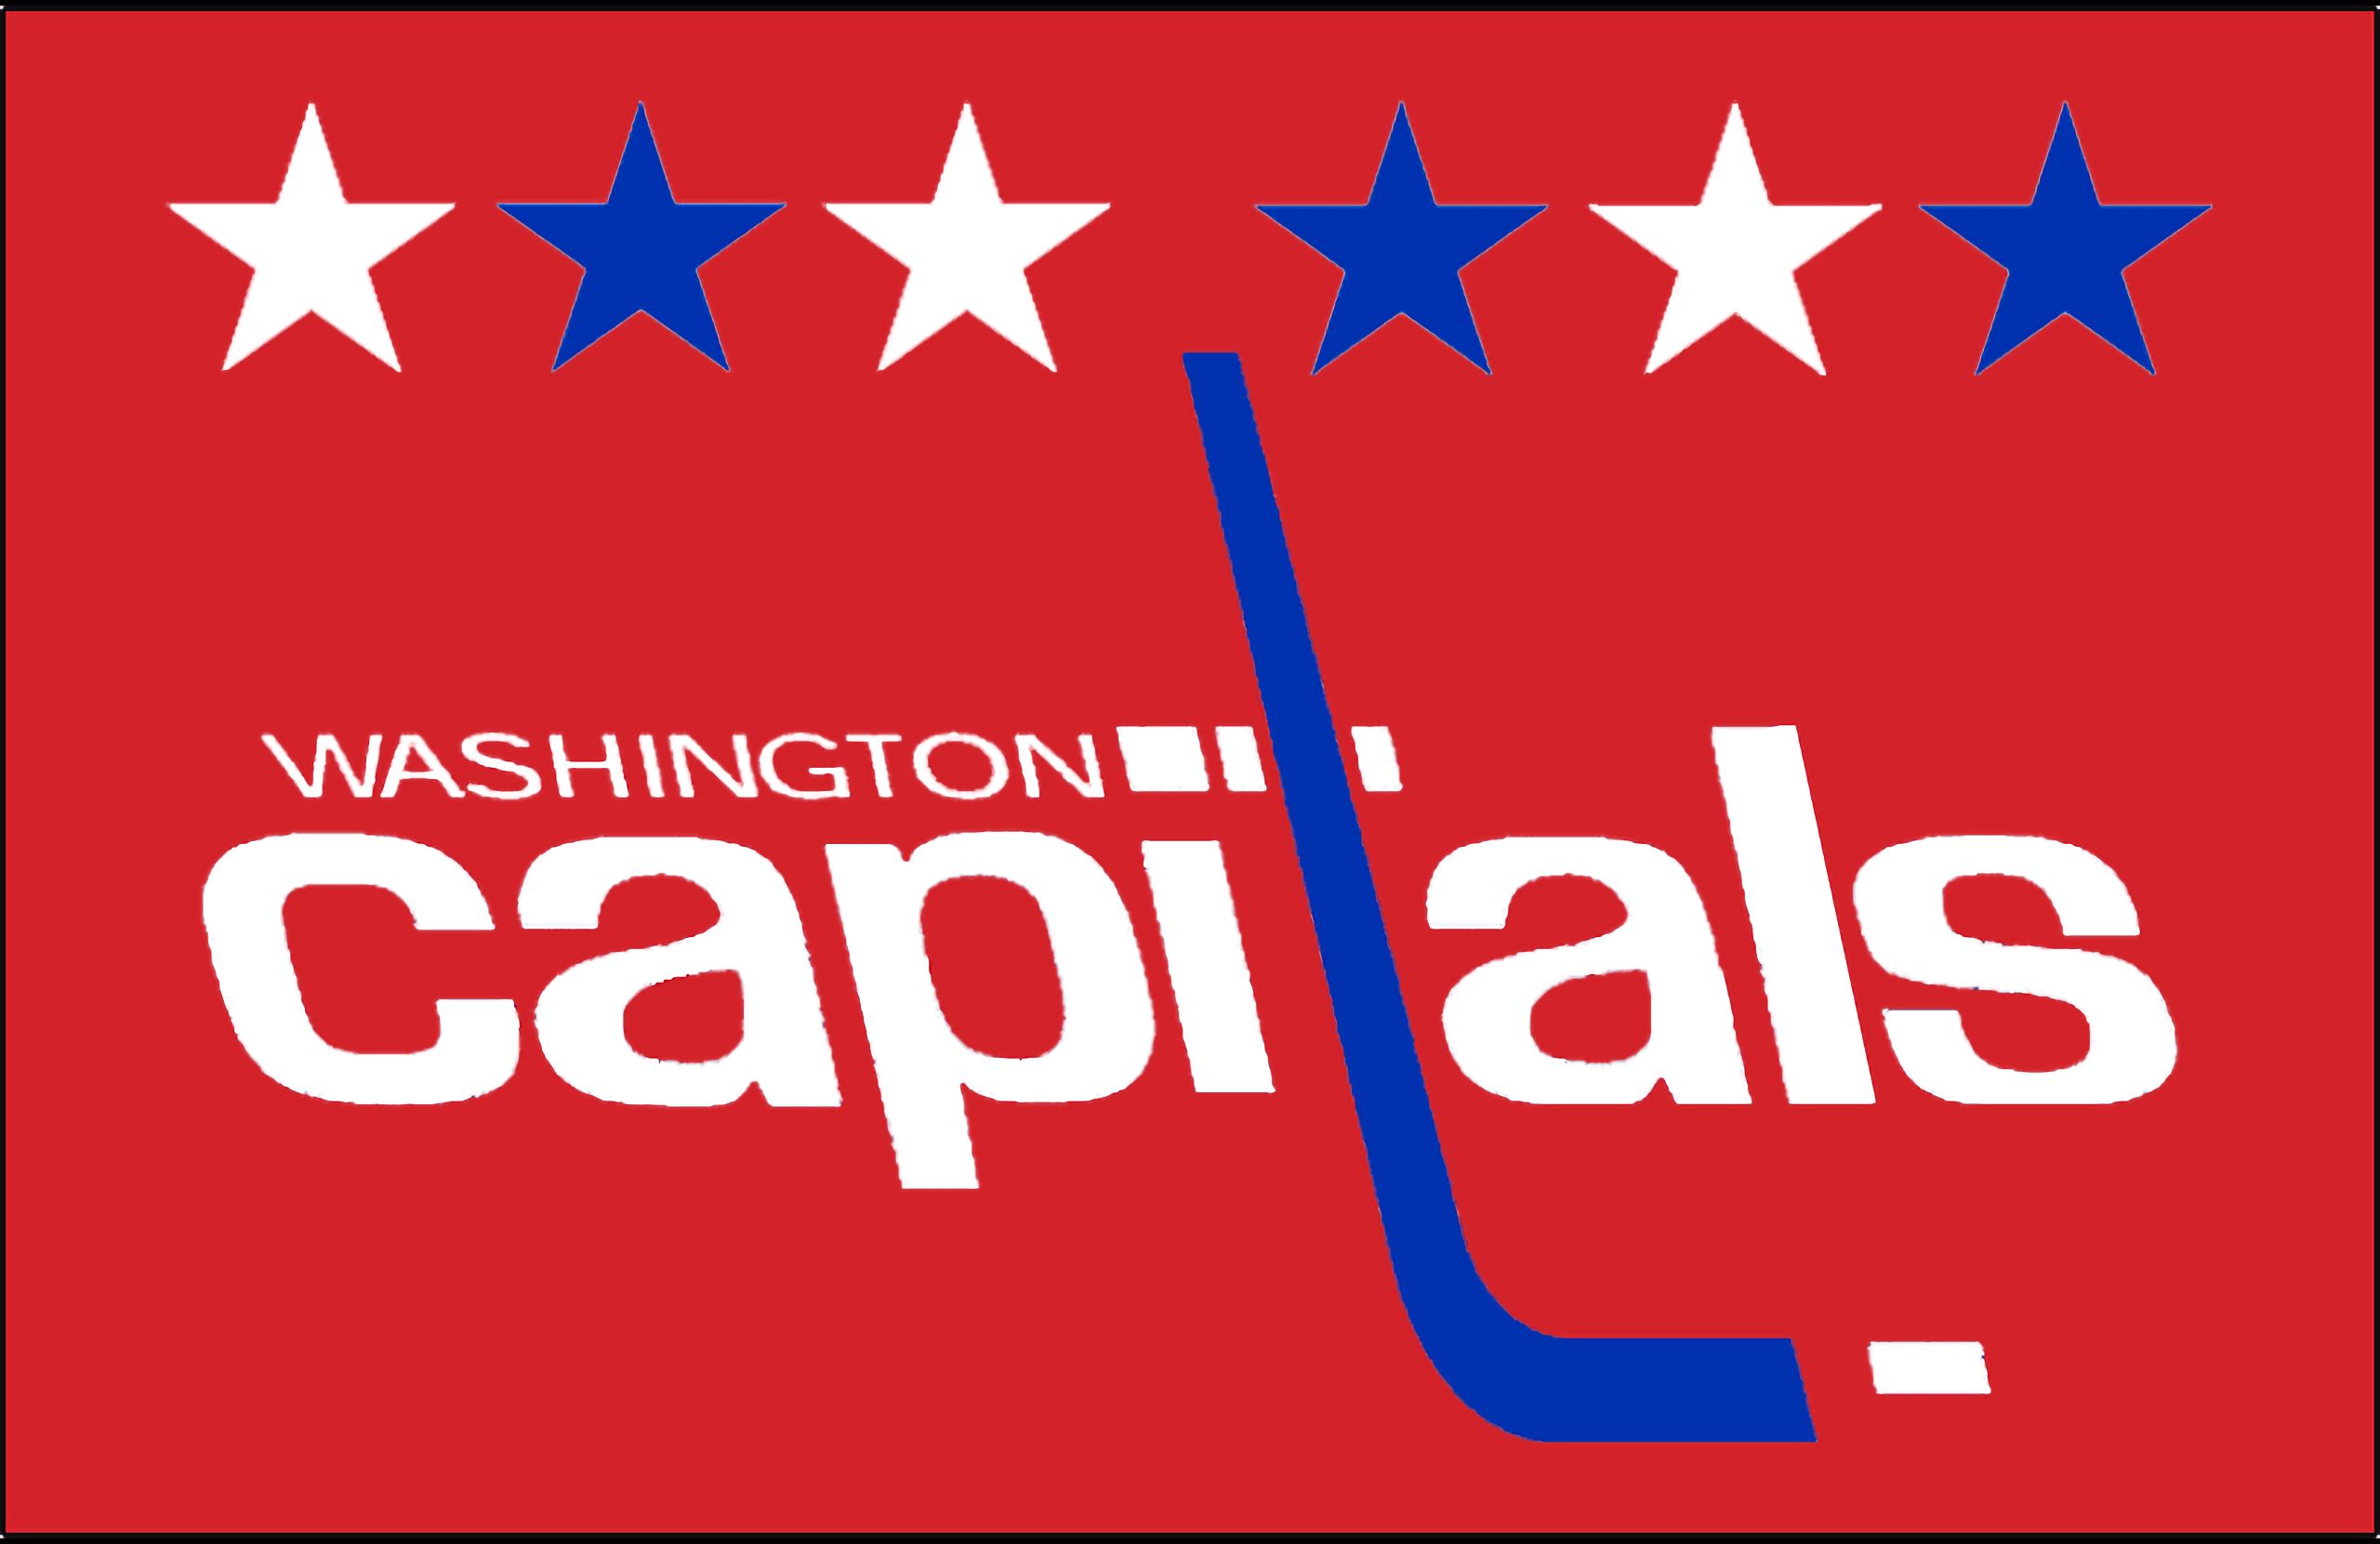 Simple Washington Capitals Wallpaper • /r/wallpapers  Washington capitals, Washington  capitals logo, R wallpaper